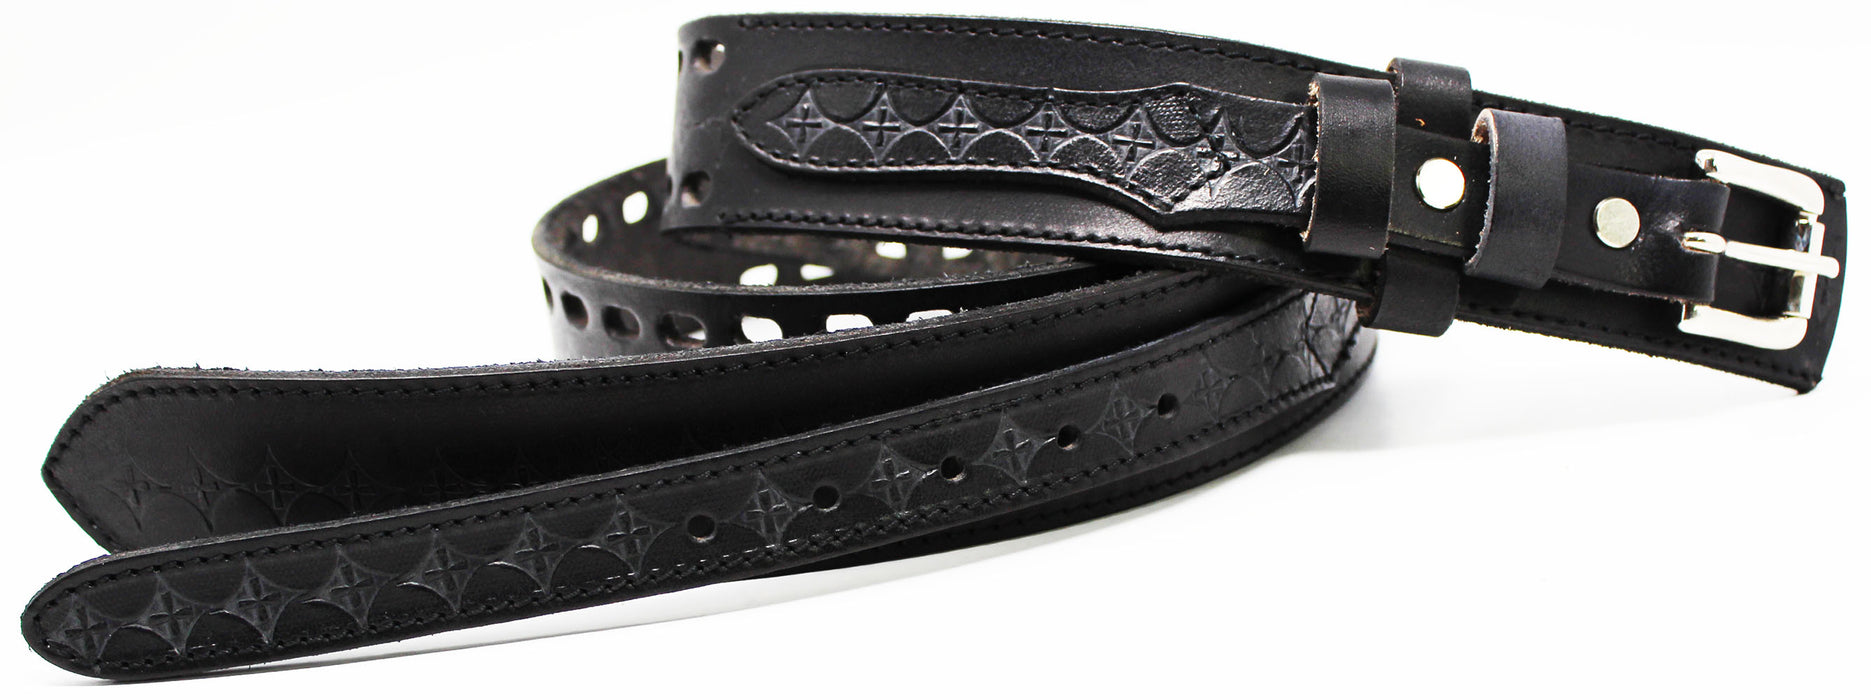 Men's 100% Leather Double Hole Casual Jean Ranger Belt Cross Black 12RAA23